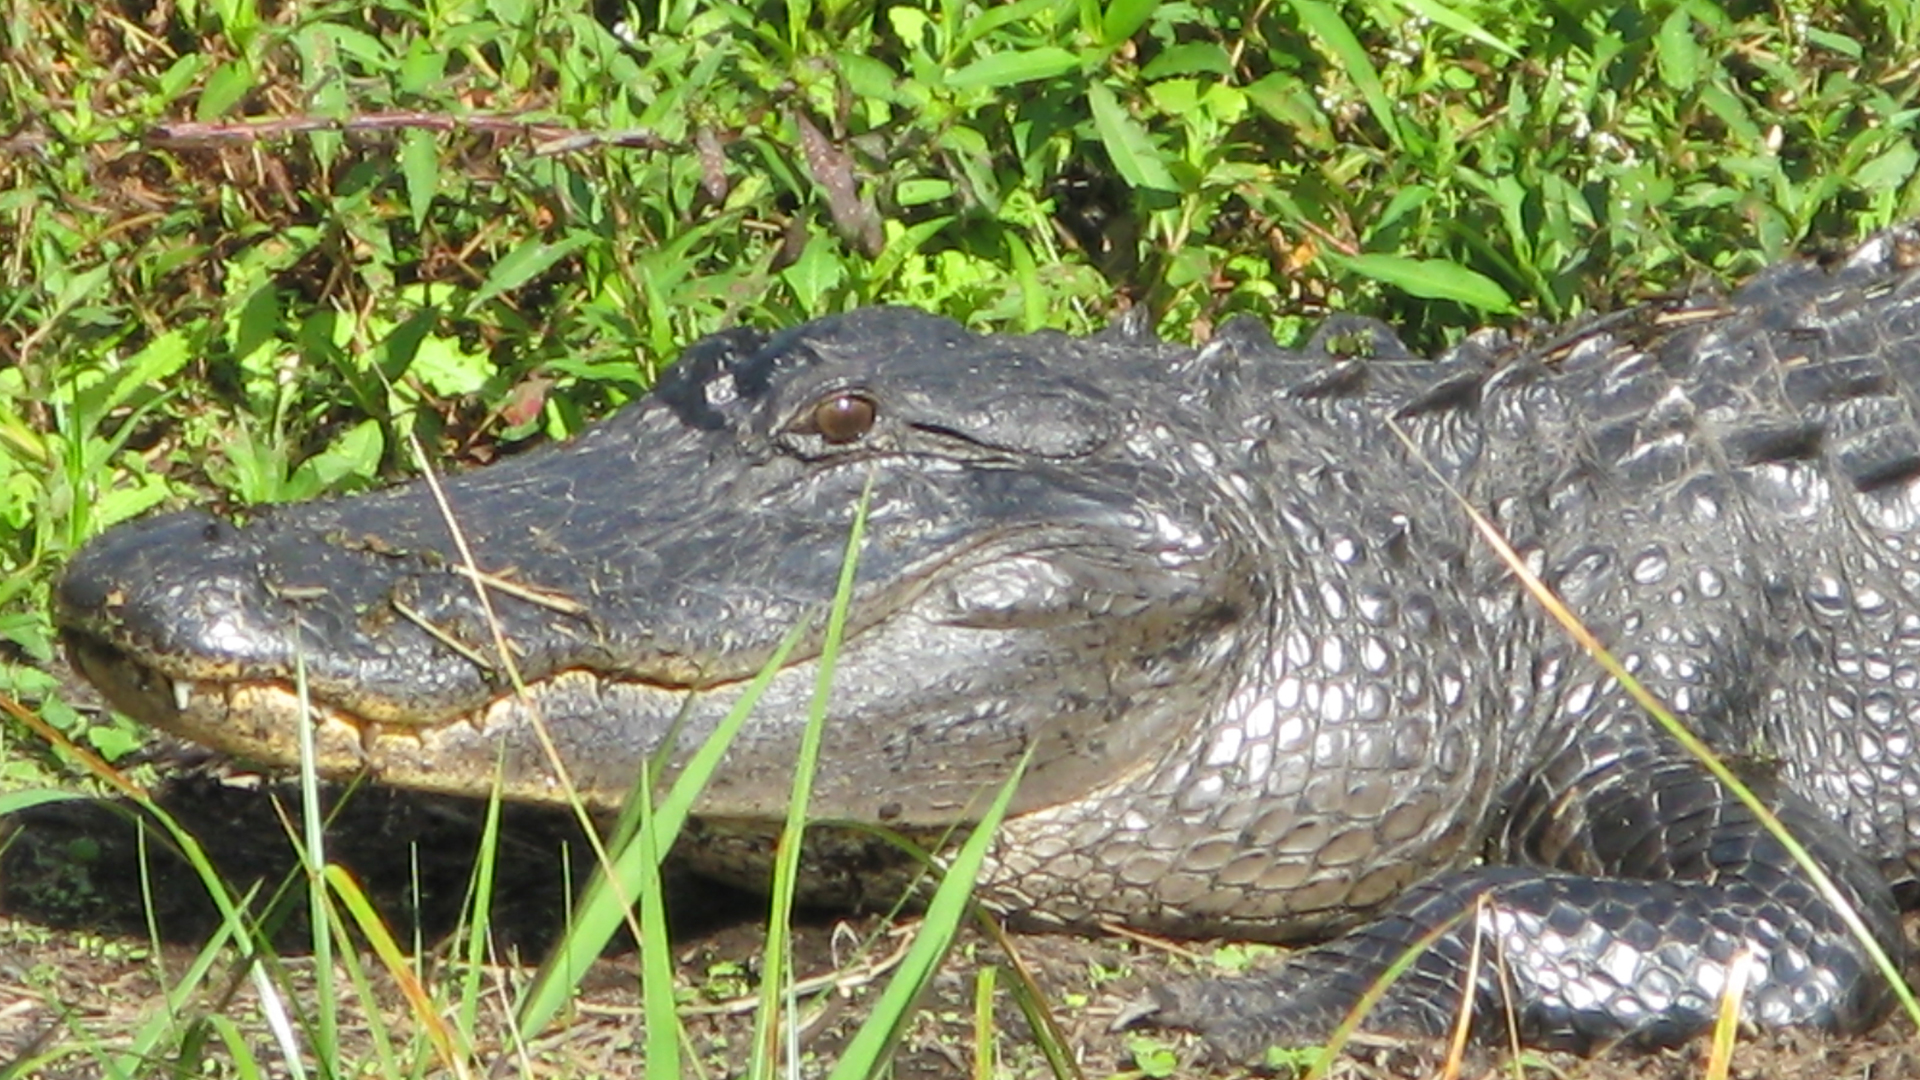 Closeup of an alligator's head.